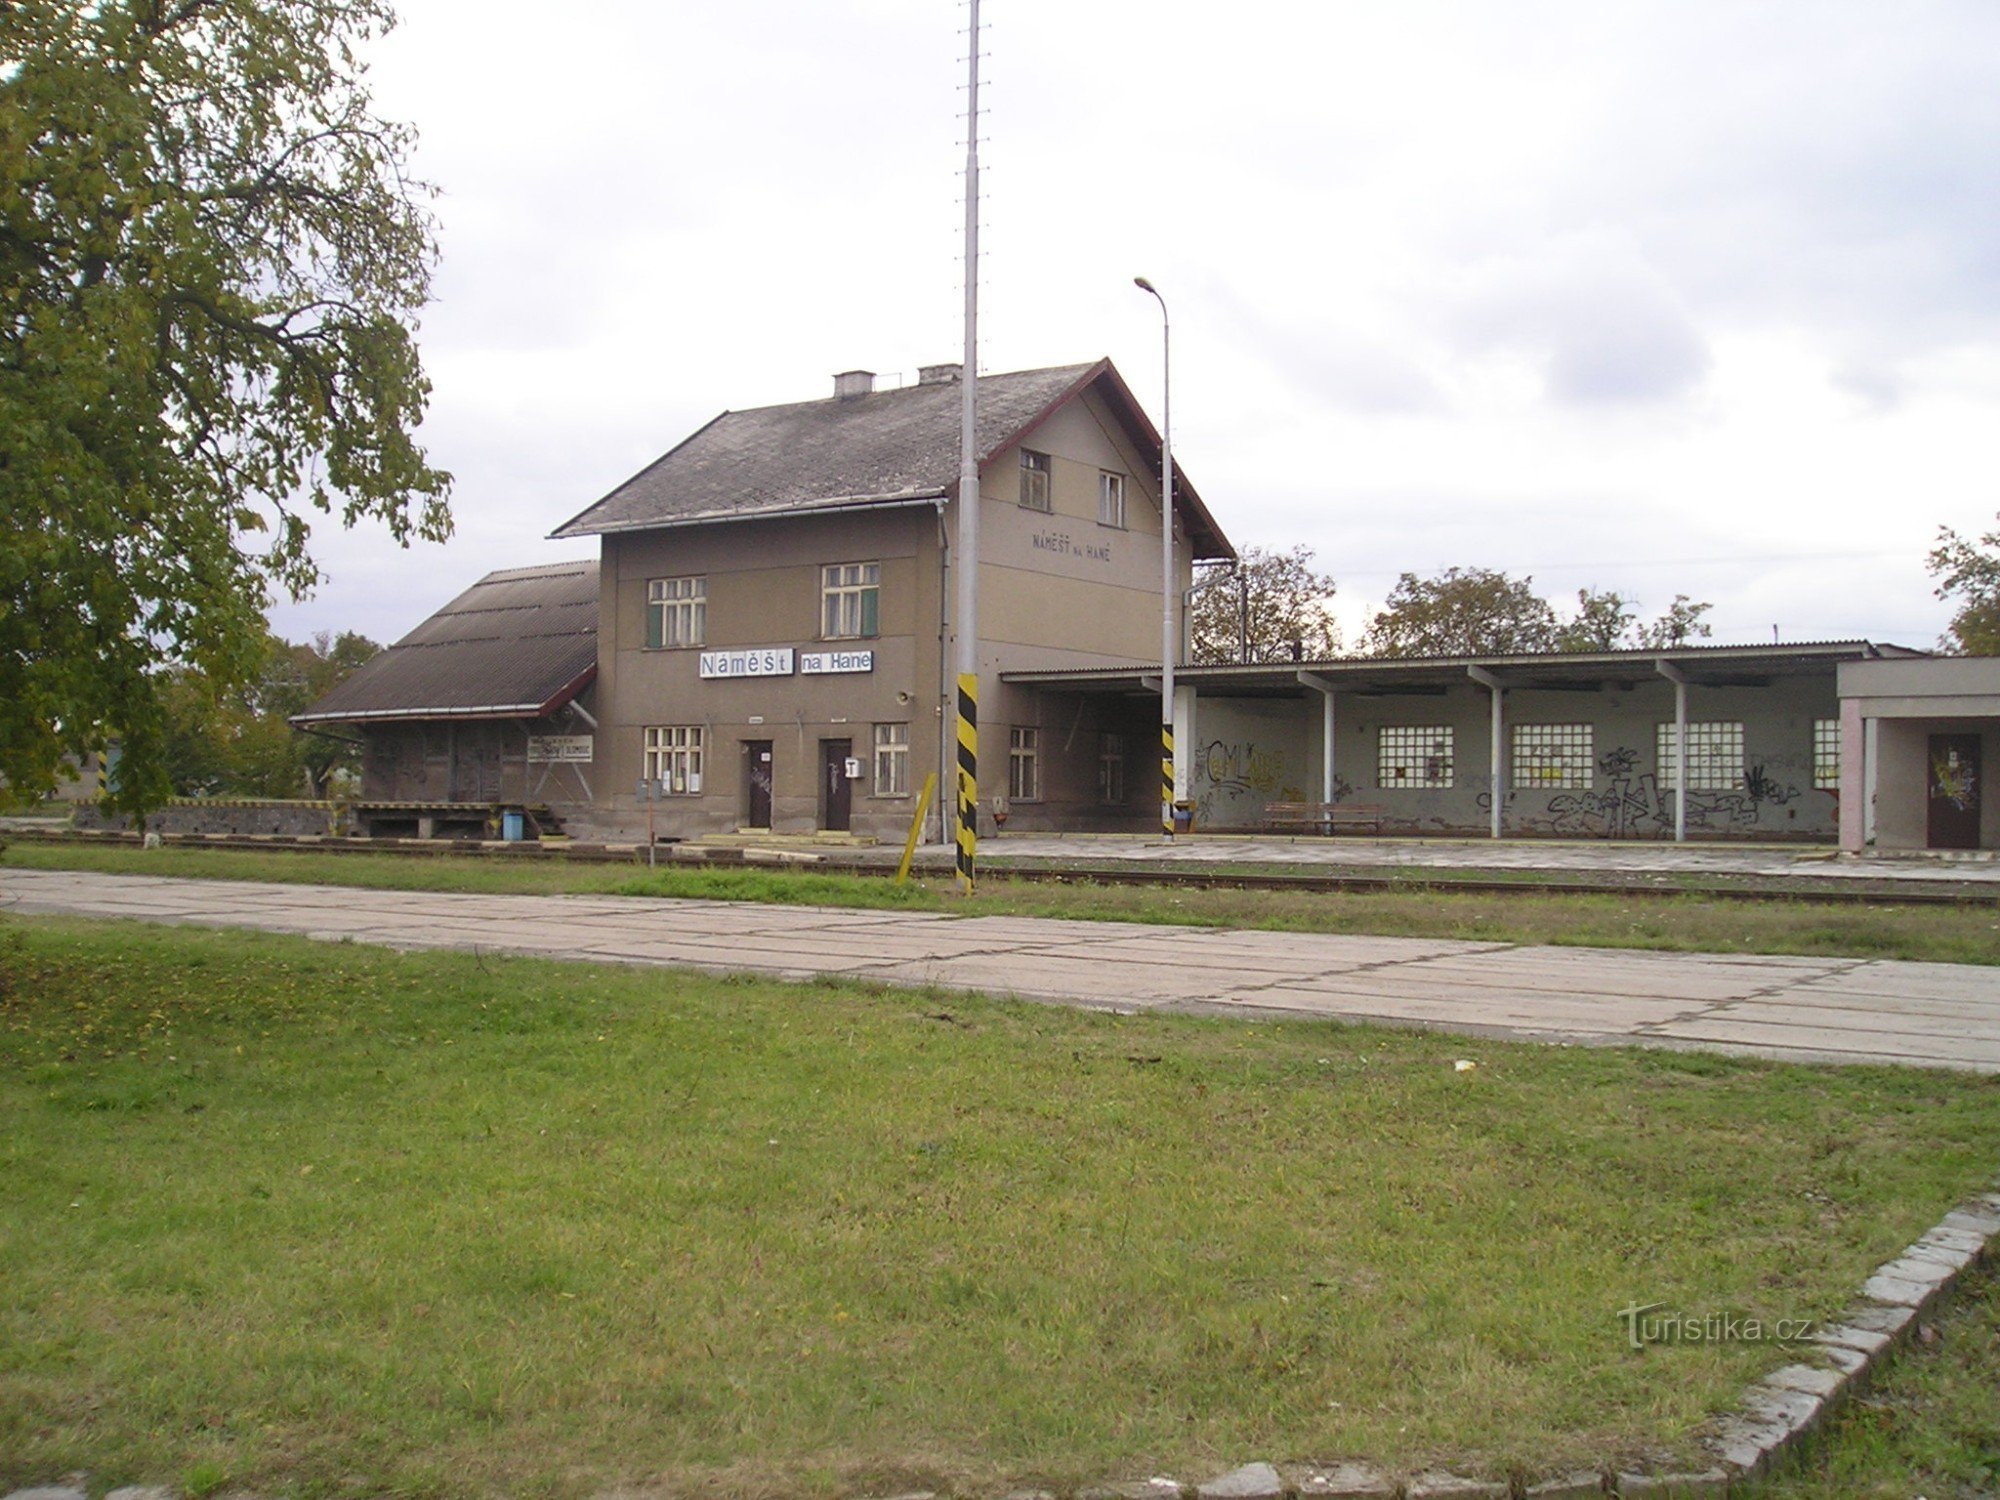 Железнодорожный вокзал в Намешт-на-Хане